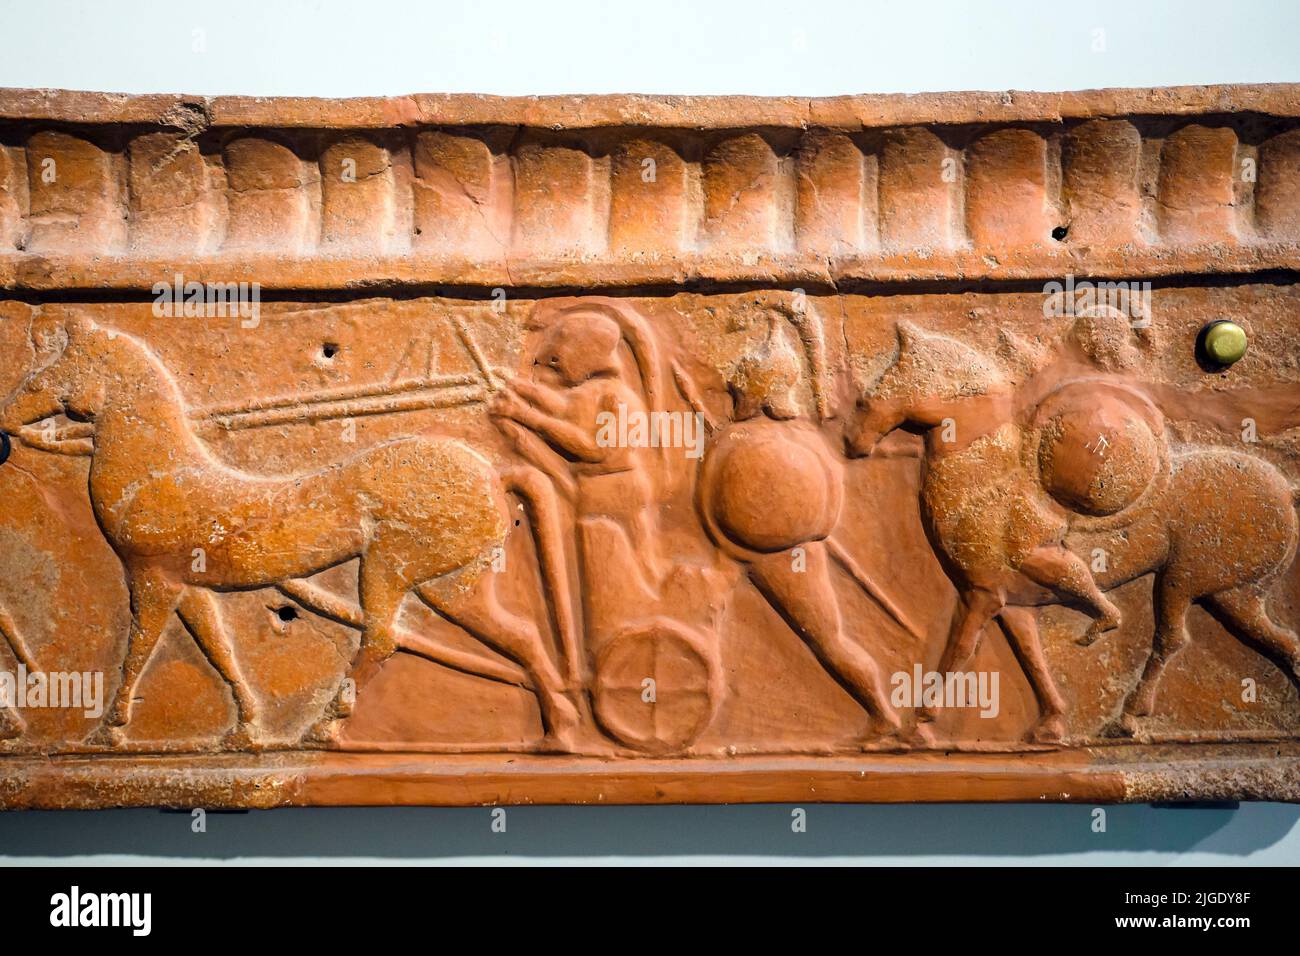 Cubierta de losa con una procesión de hombres armados en un carro tirado por caballos y a pie. Terracota moldeada. 590-580 aC de la decoración arquitectónica de Foto de stock